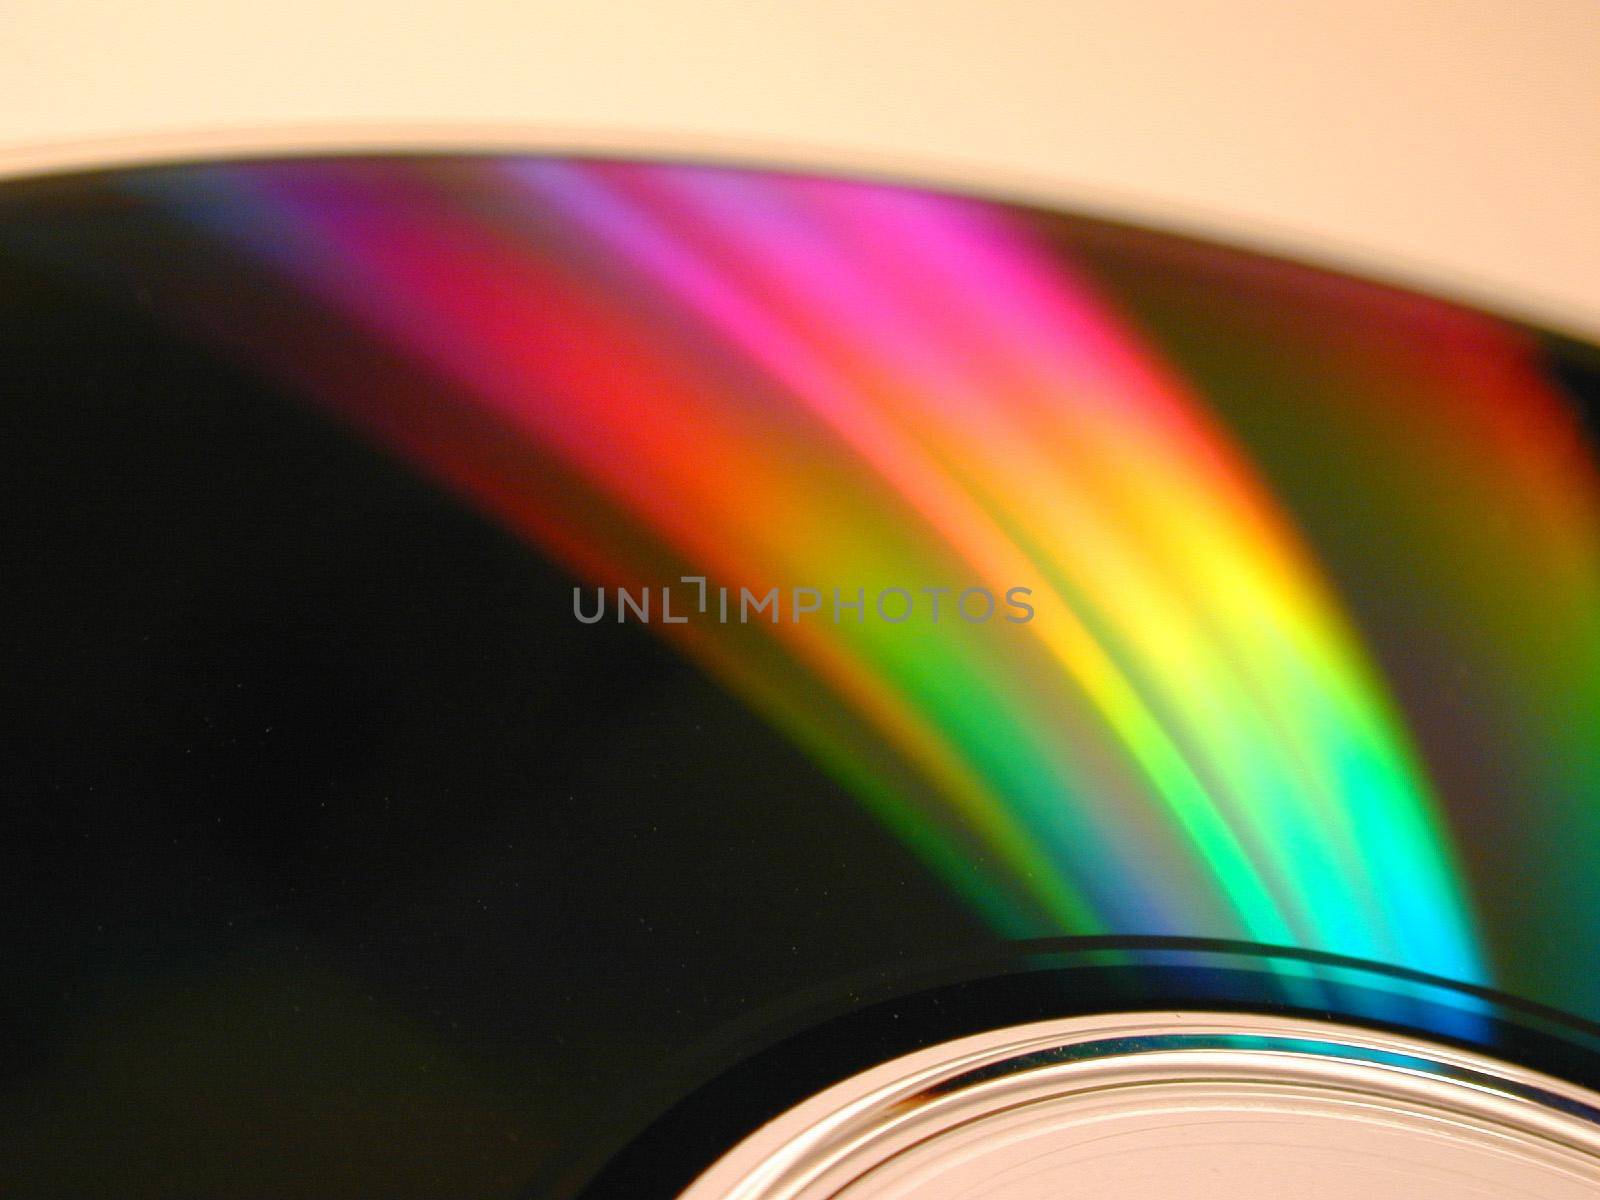 Rainbow on optical disc surface by sanisra